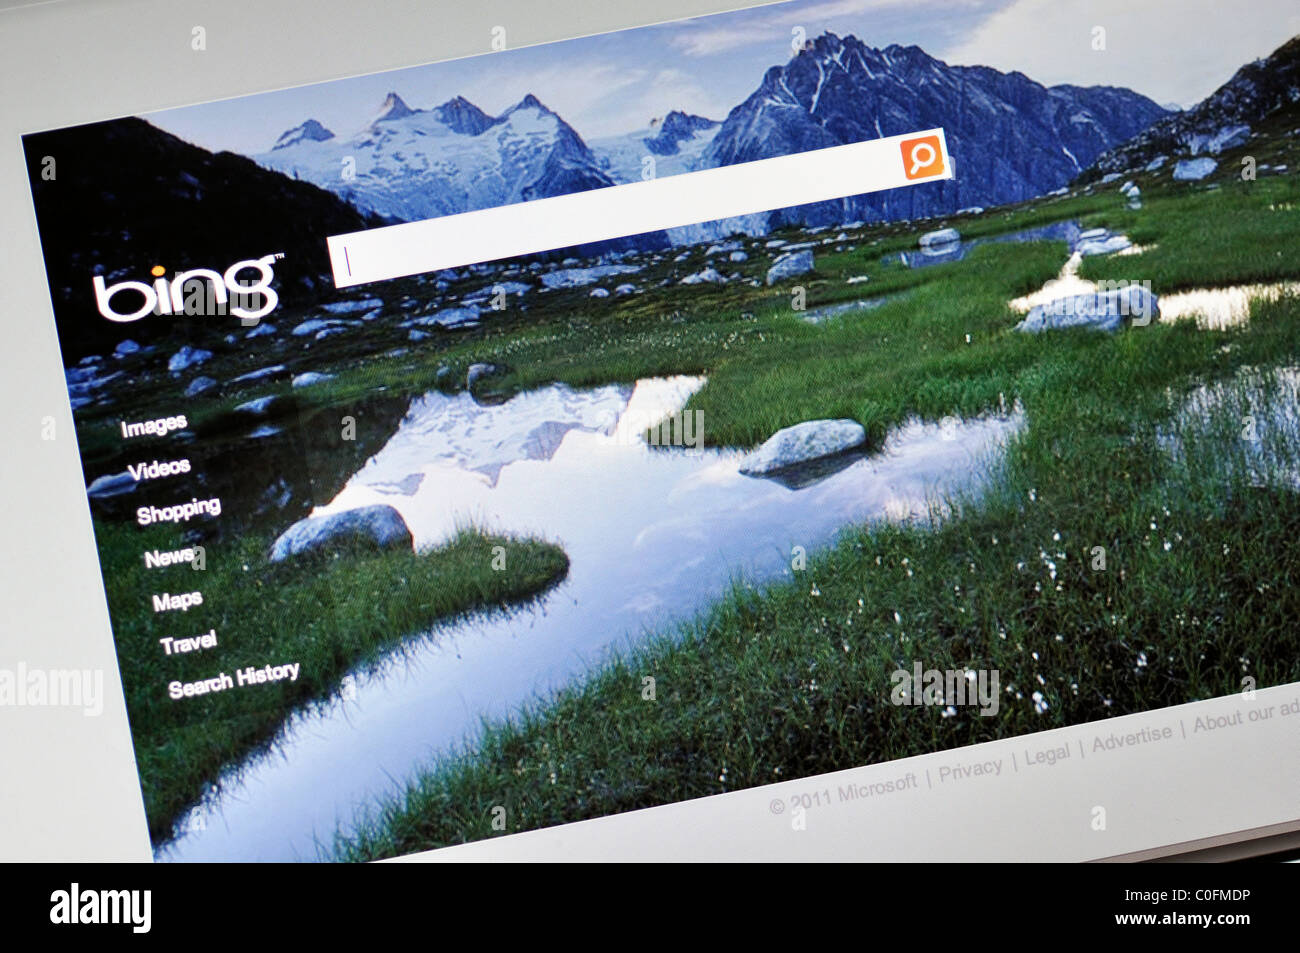 Bing motore di ricerca sito web Foto Stock